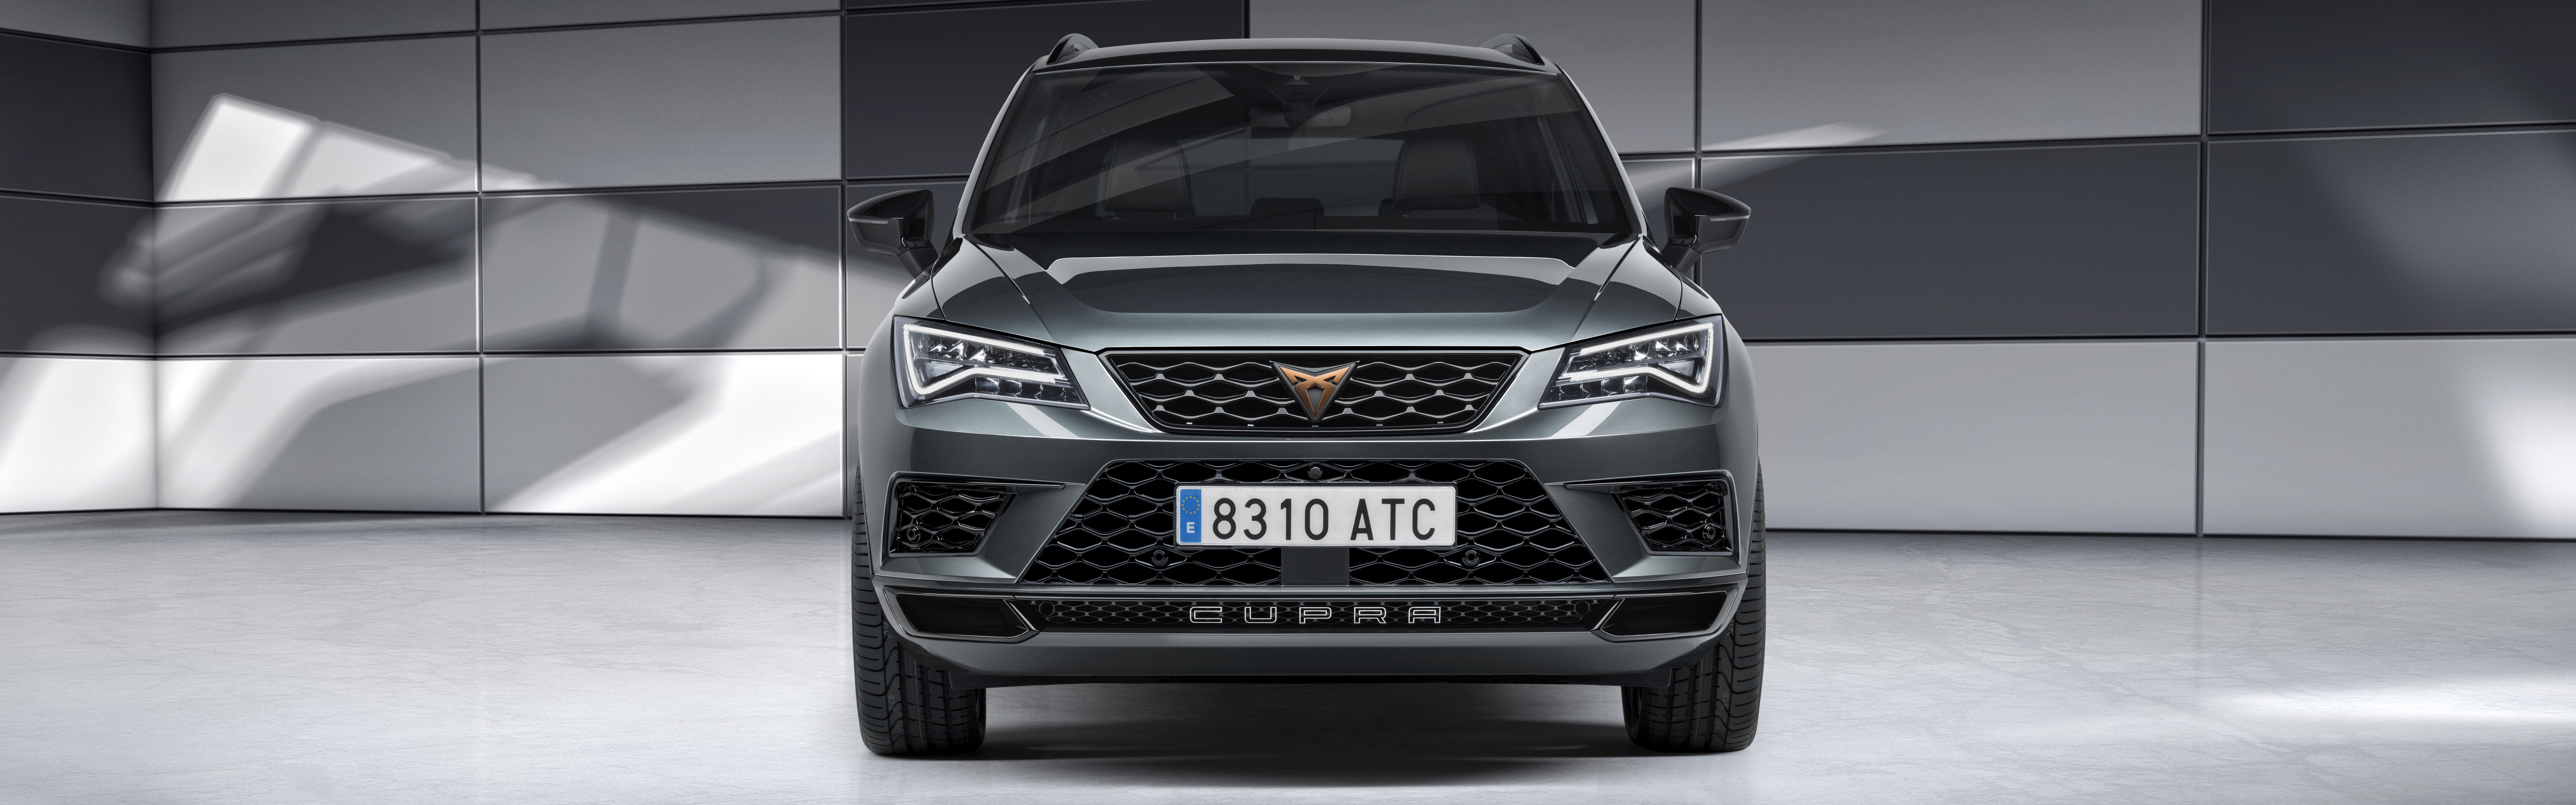 SEAT Ateca Cupra 2018: Preise, Motoren & Verkaufsstart ...